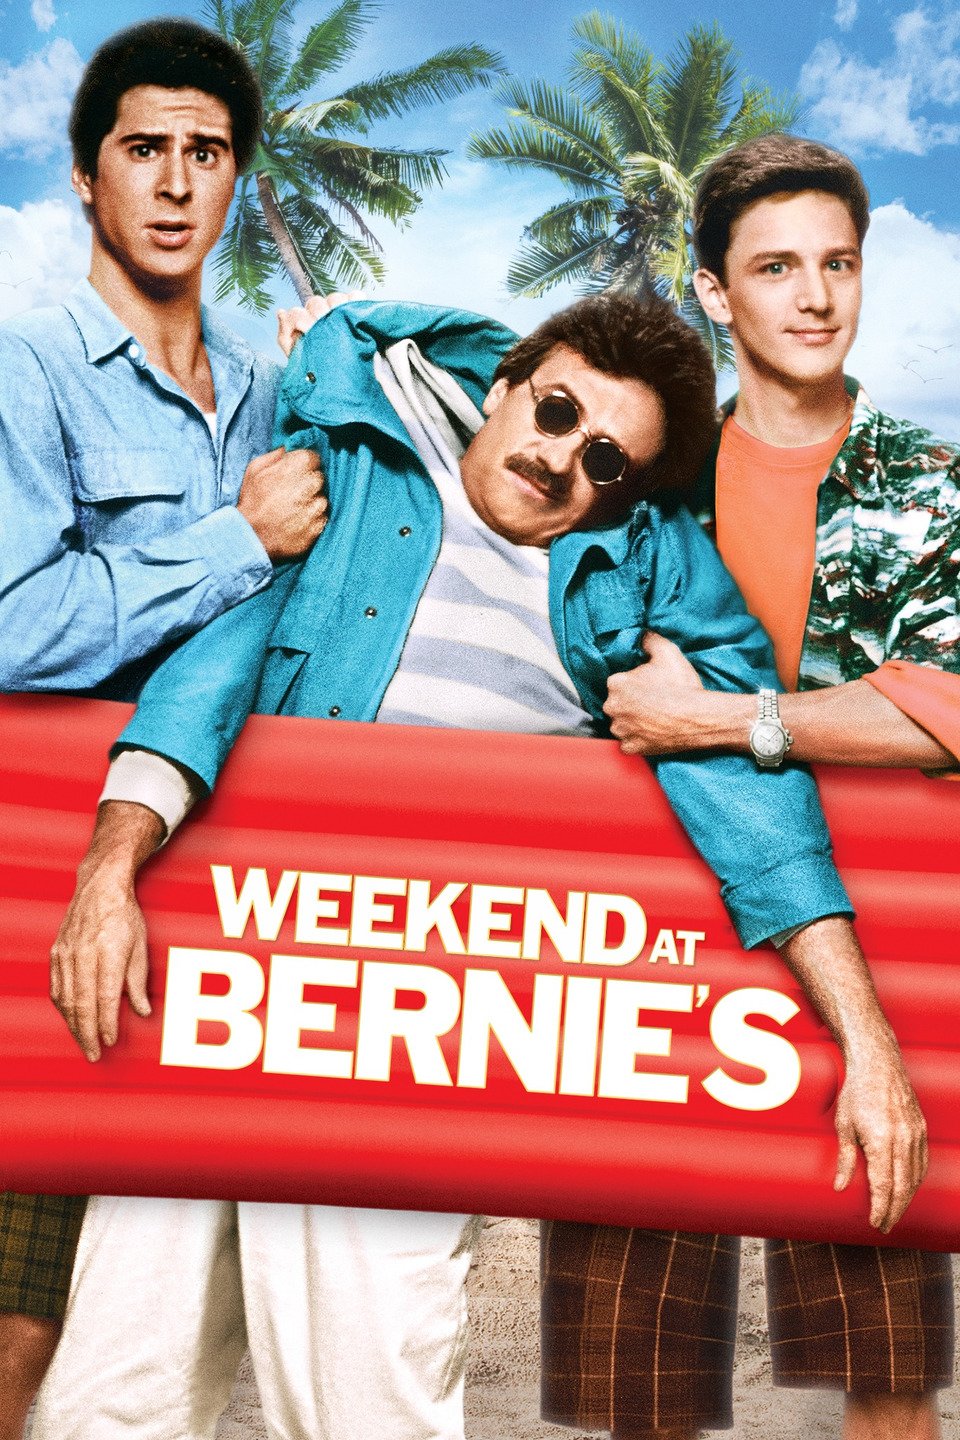 weekend at bernie's movie review